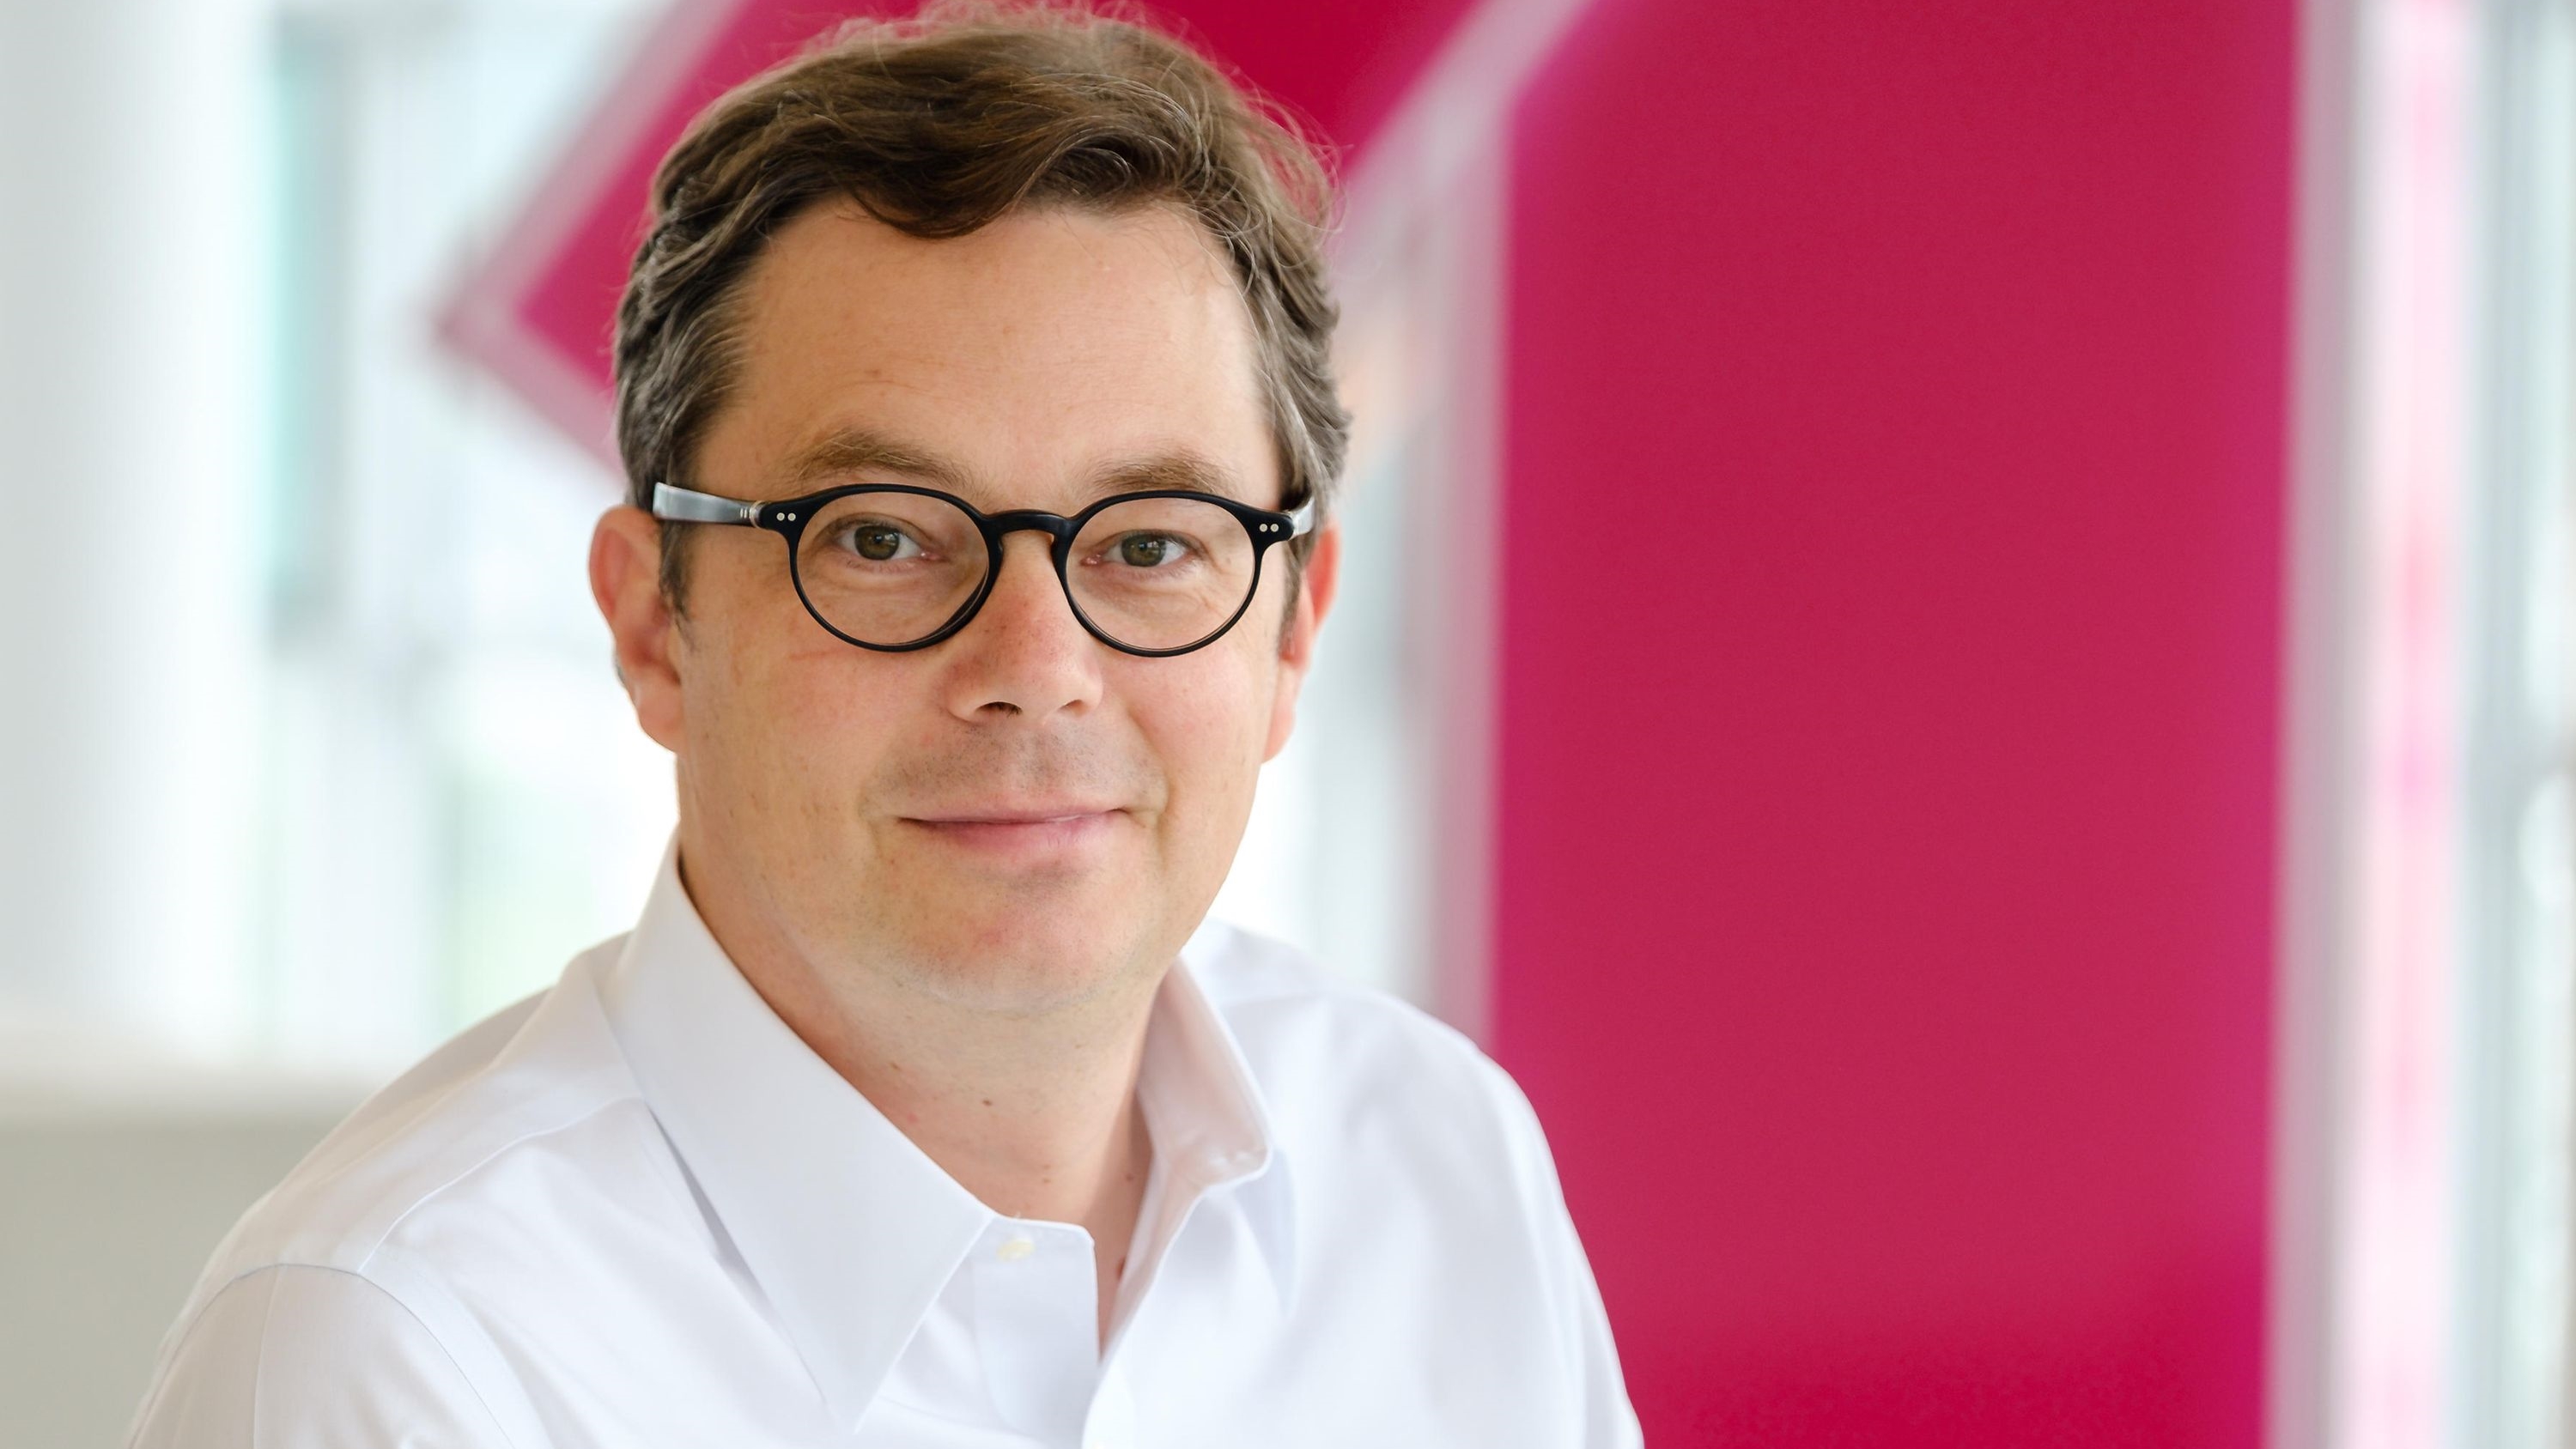 Telekom-Geschftsleitungsmitglied Dido Blankenburg verlsst den Konzern - Quelle: Telekom